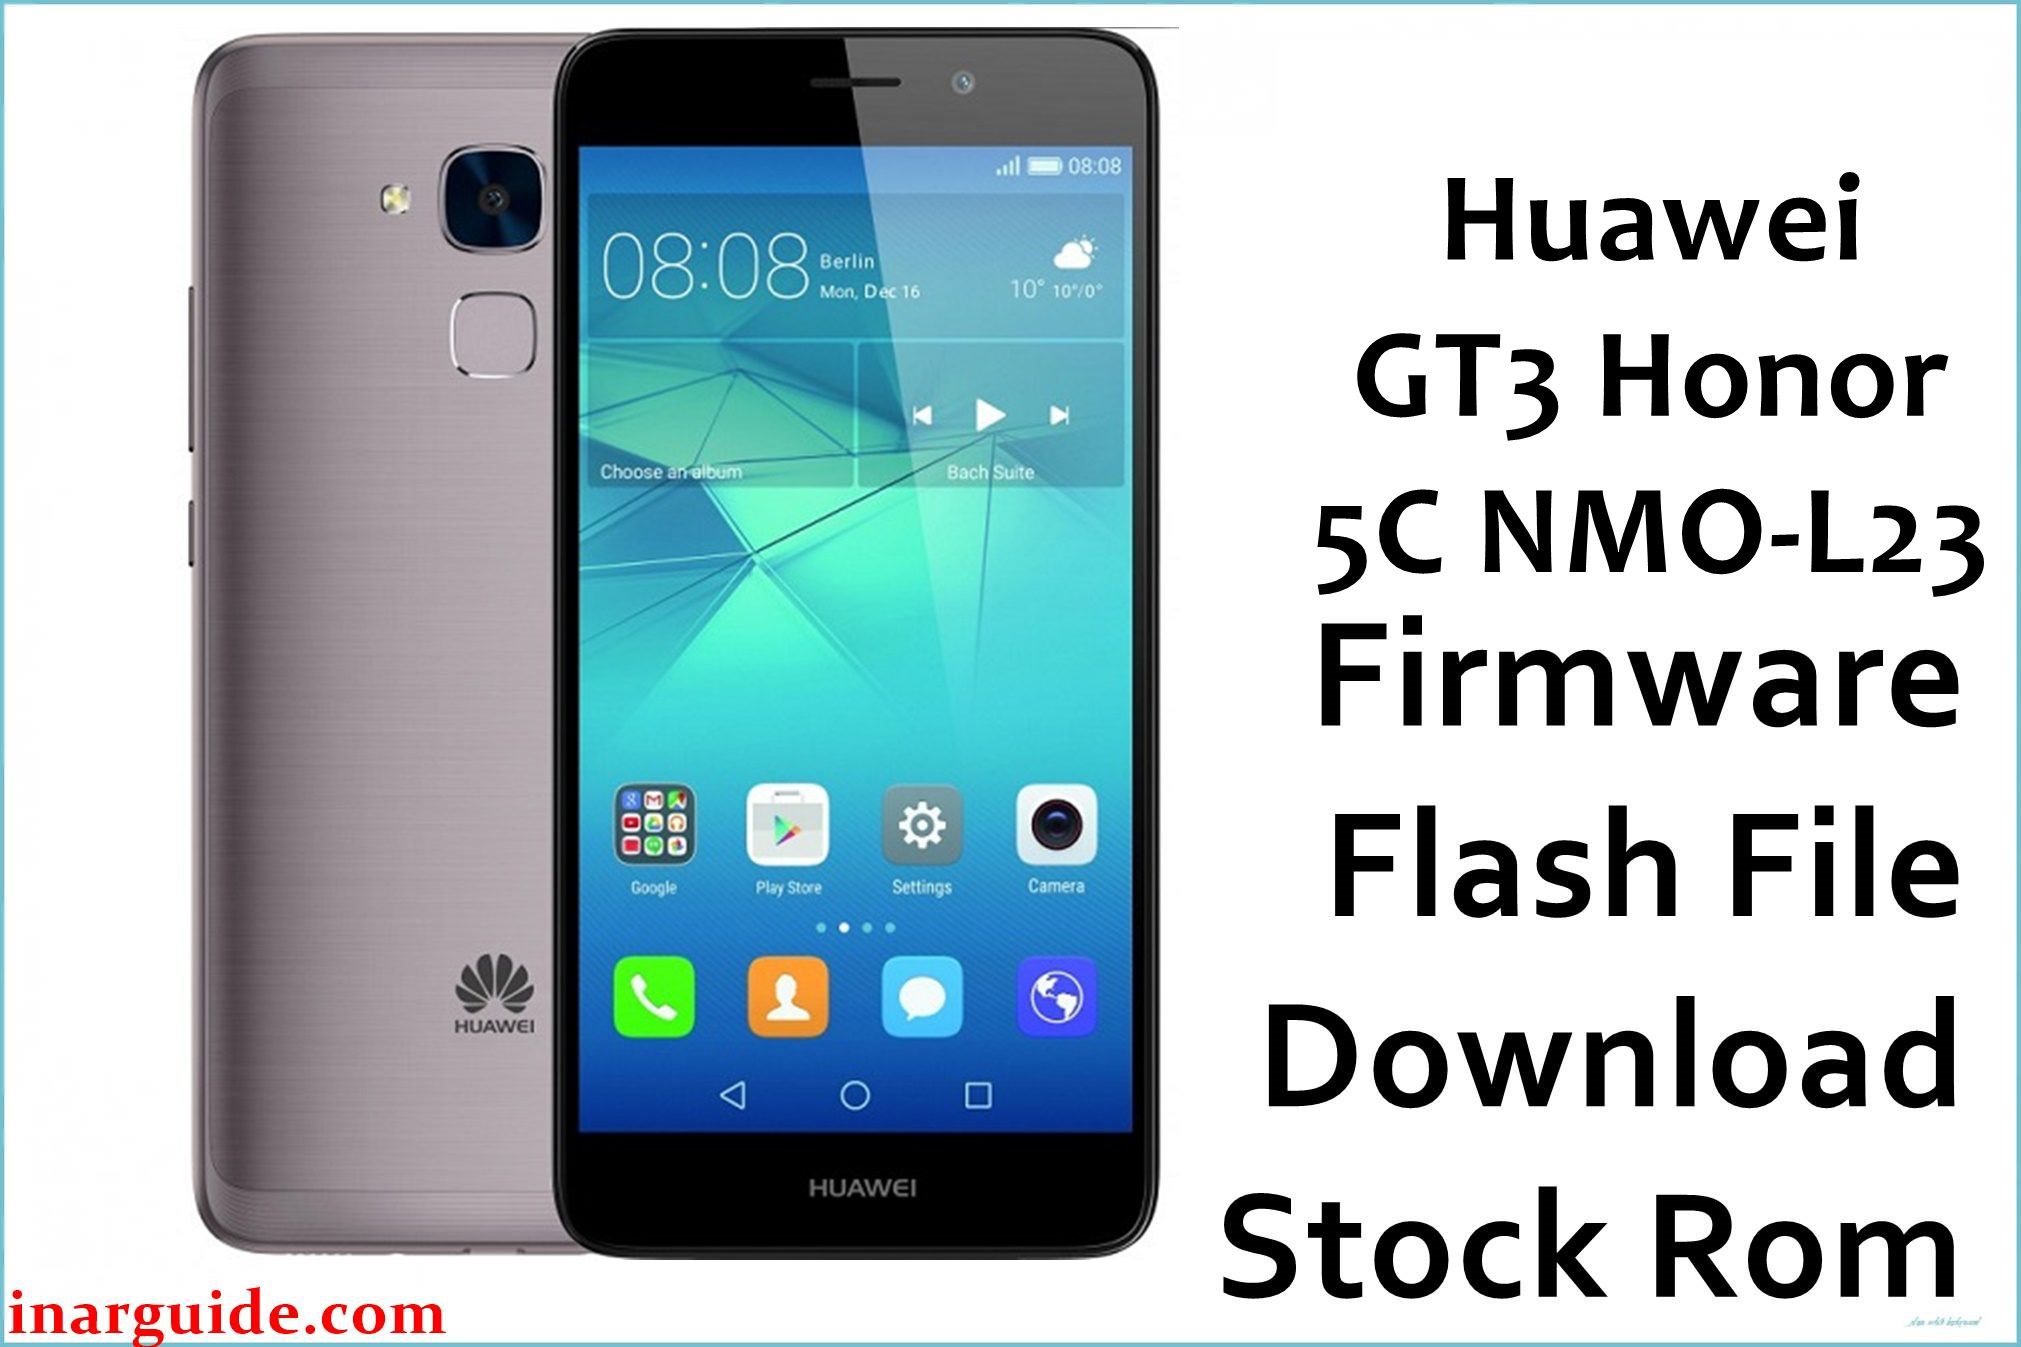 Huawei GT3 Honor 5C NMO L23